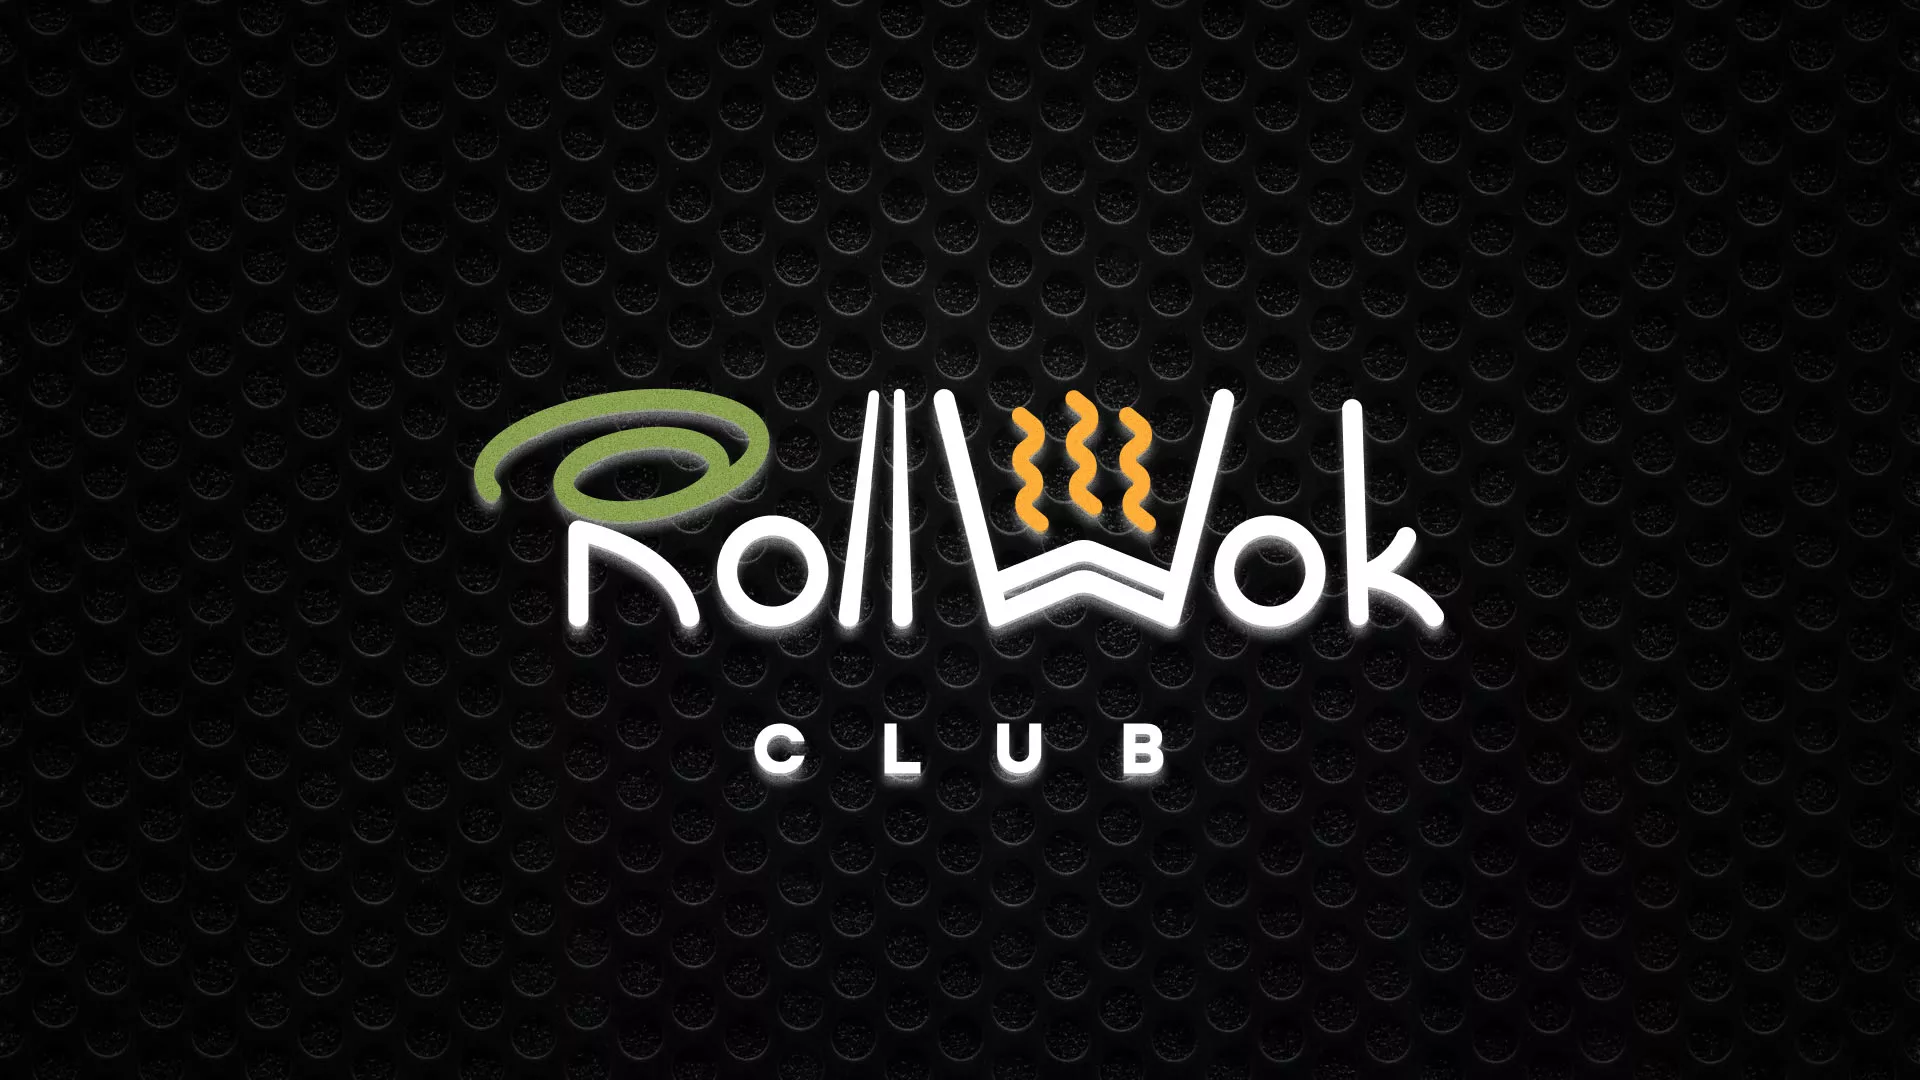 Брендирование торговых точек суши-бара «Roll Wok Club» в Каргате